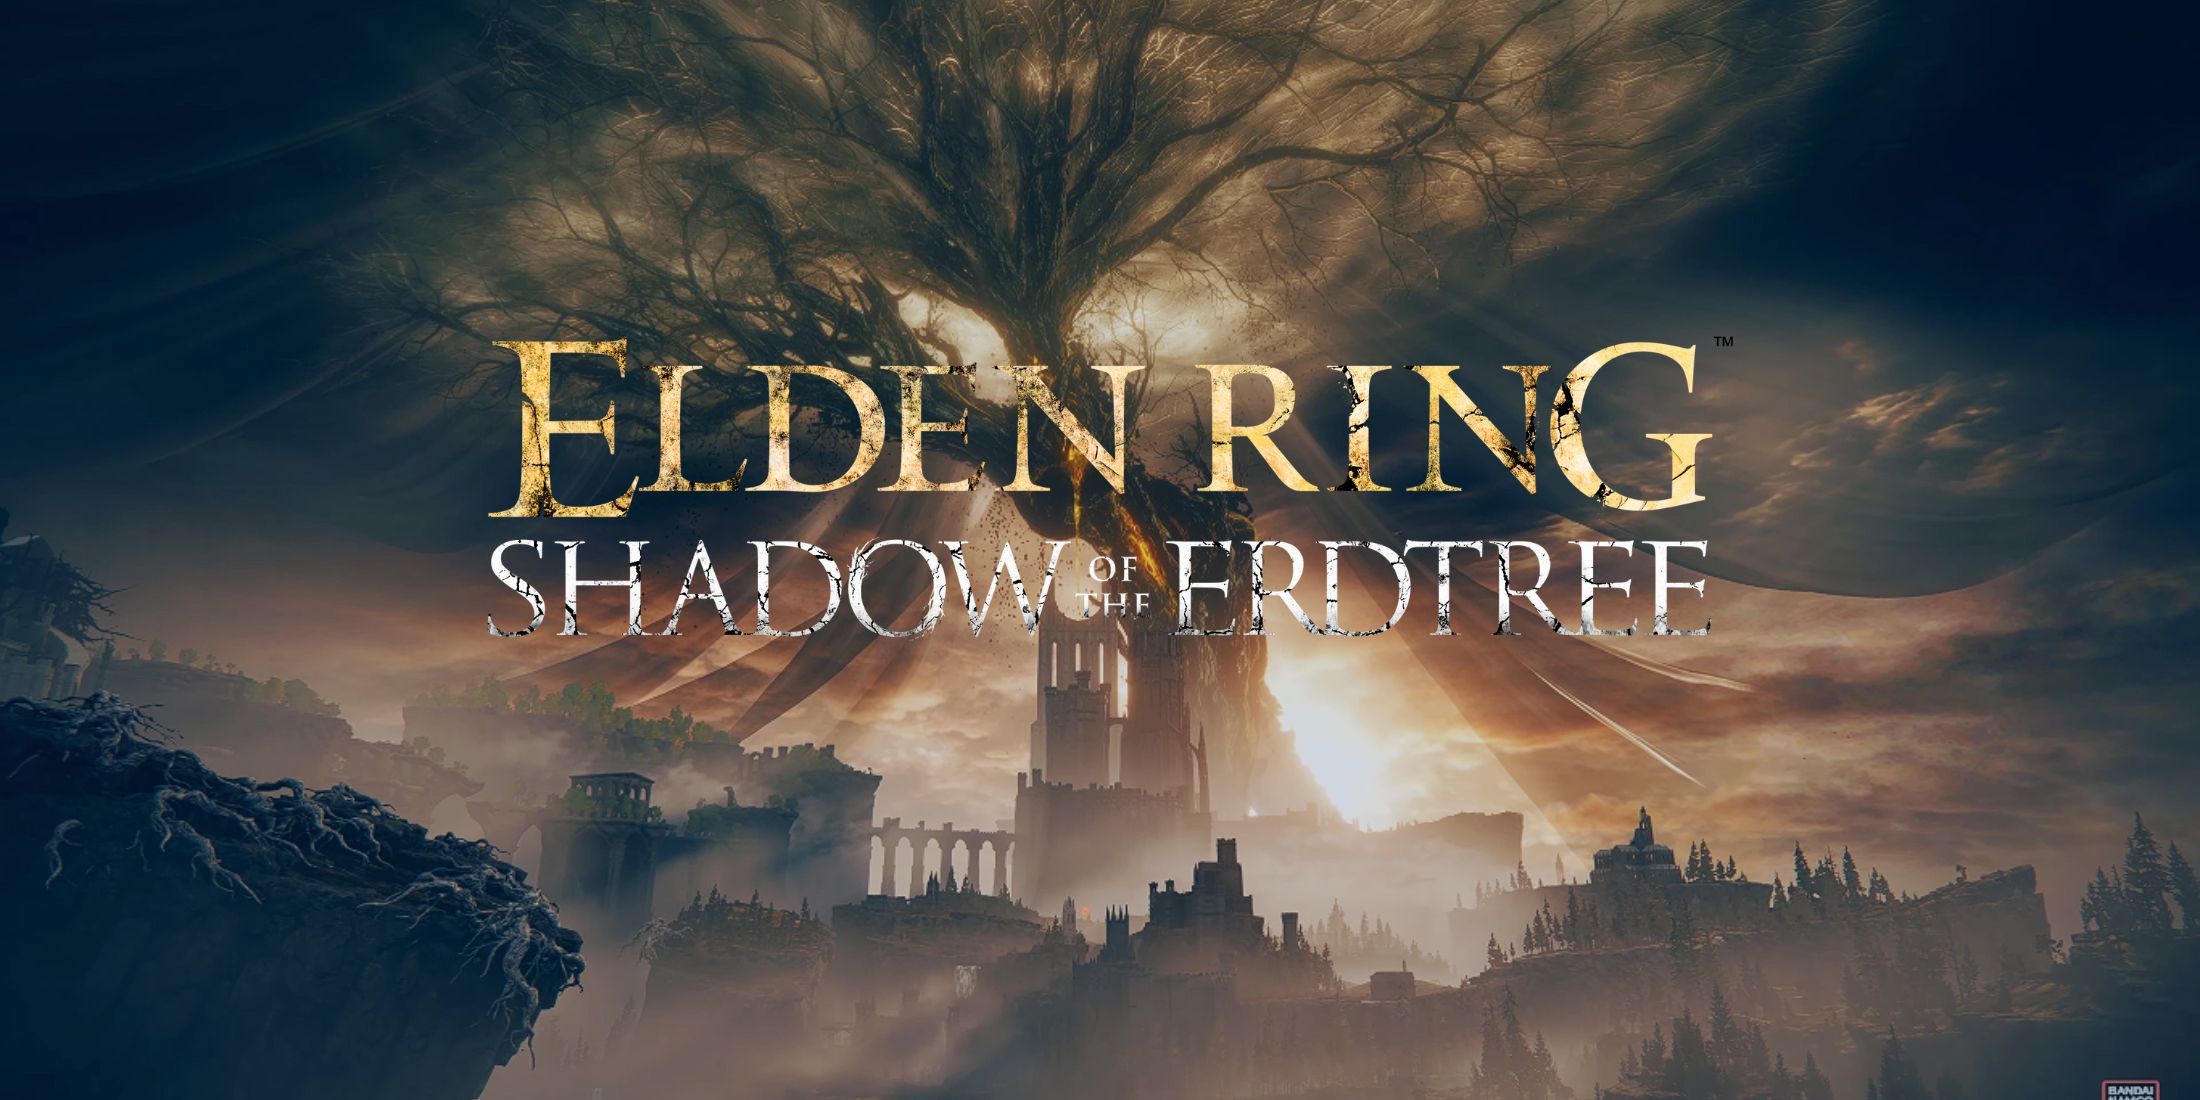 Elden Ring Shadow of the Erdtree Wallpaper